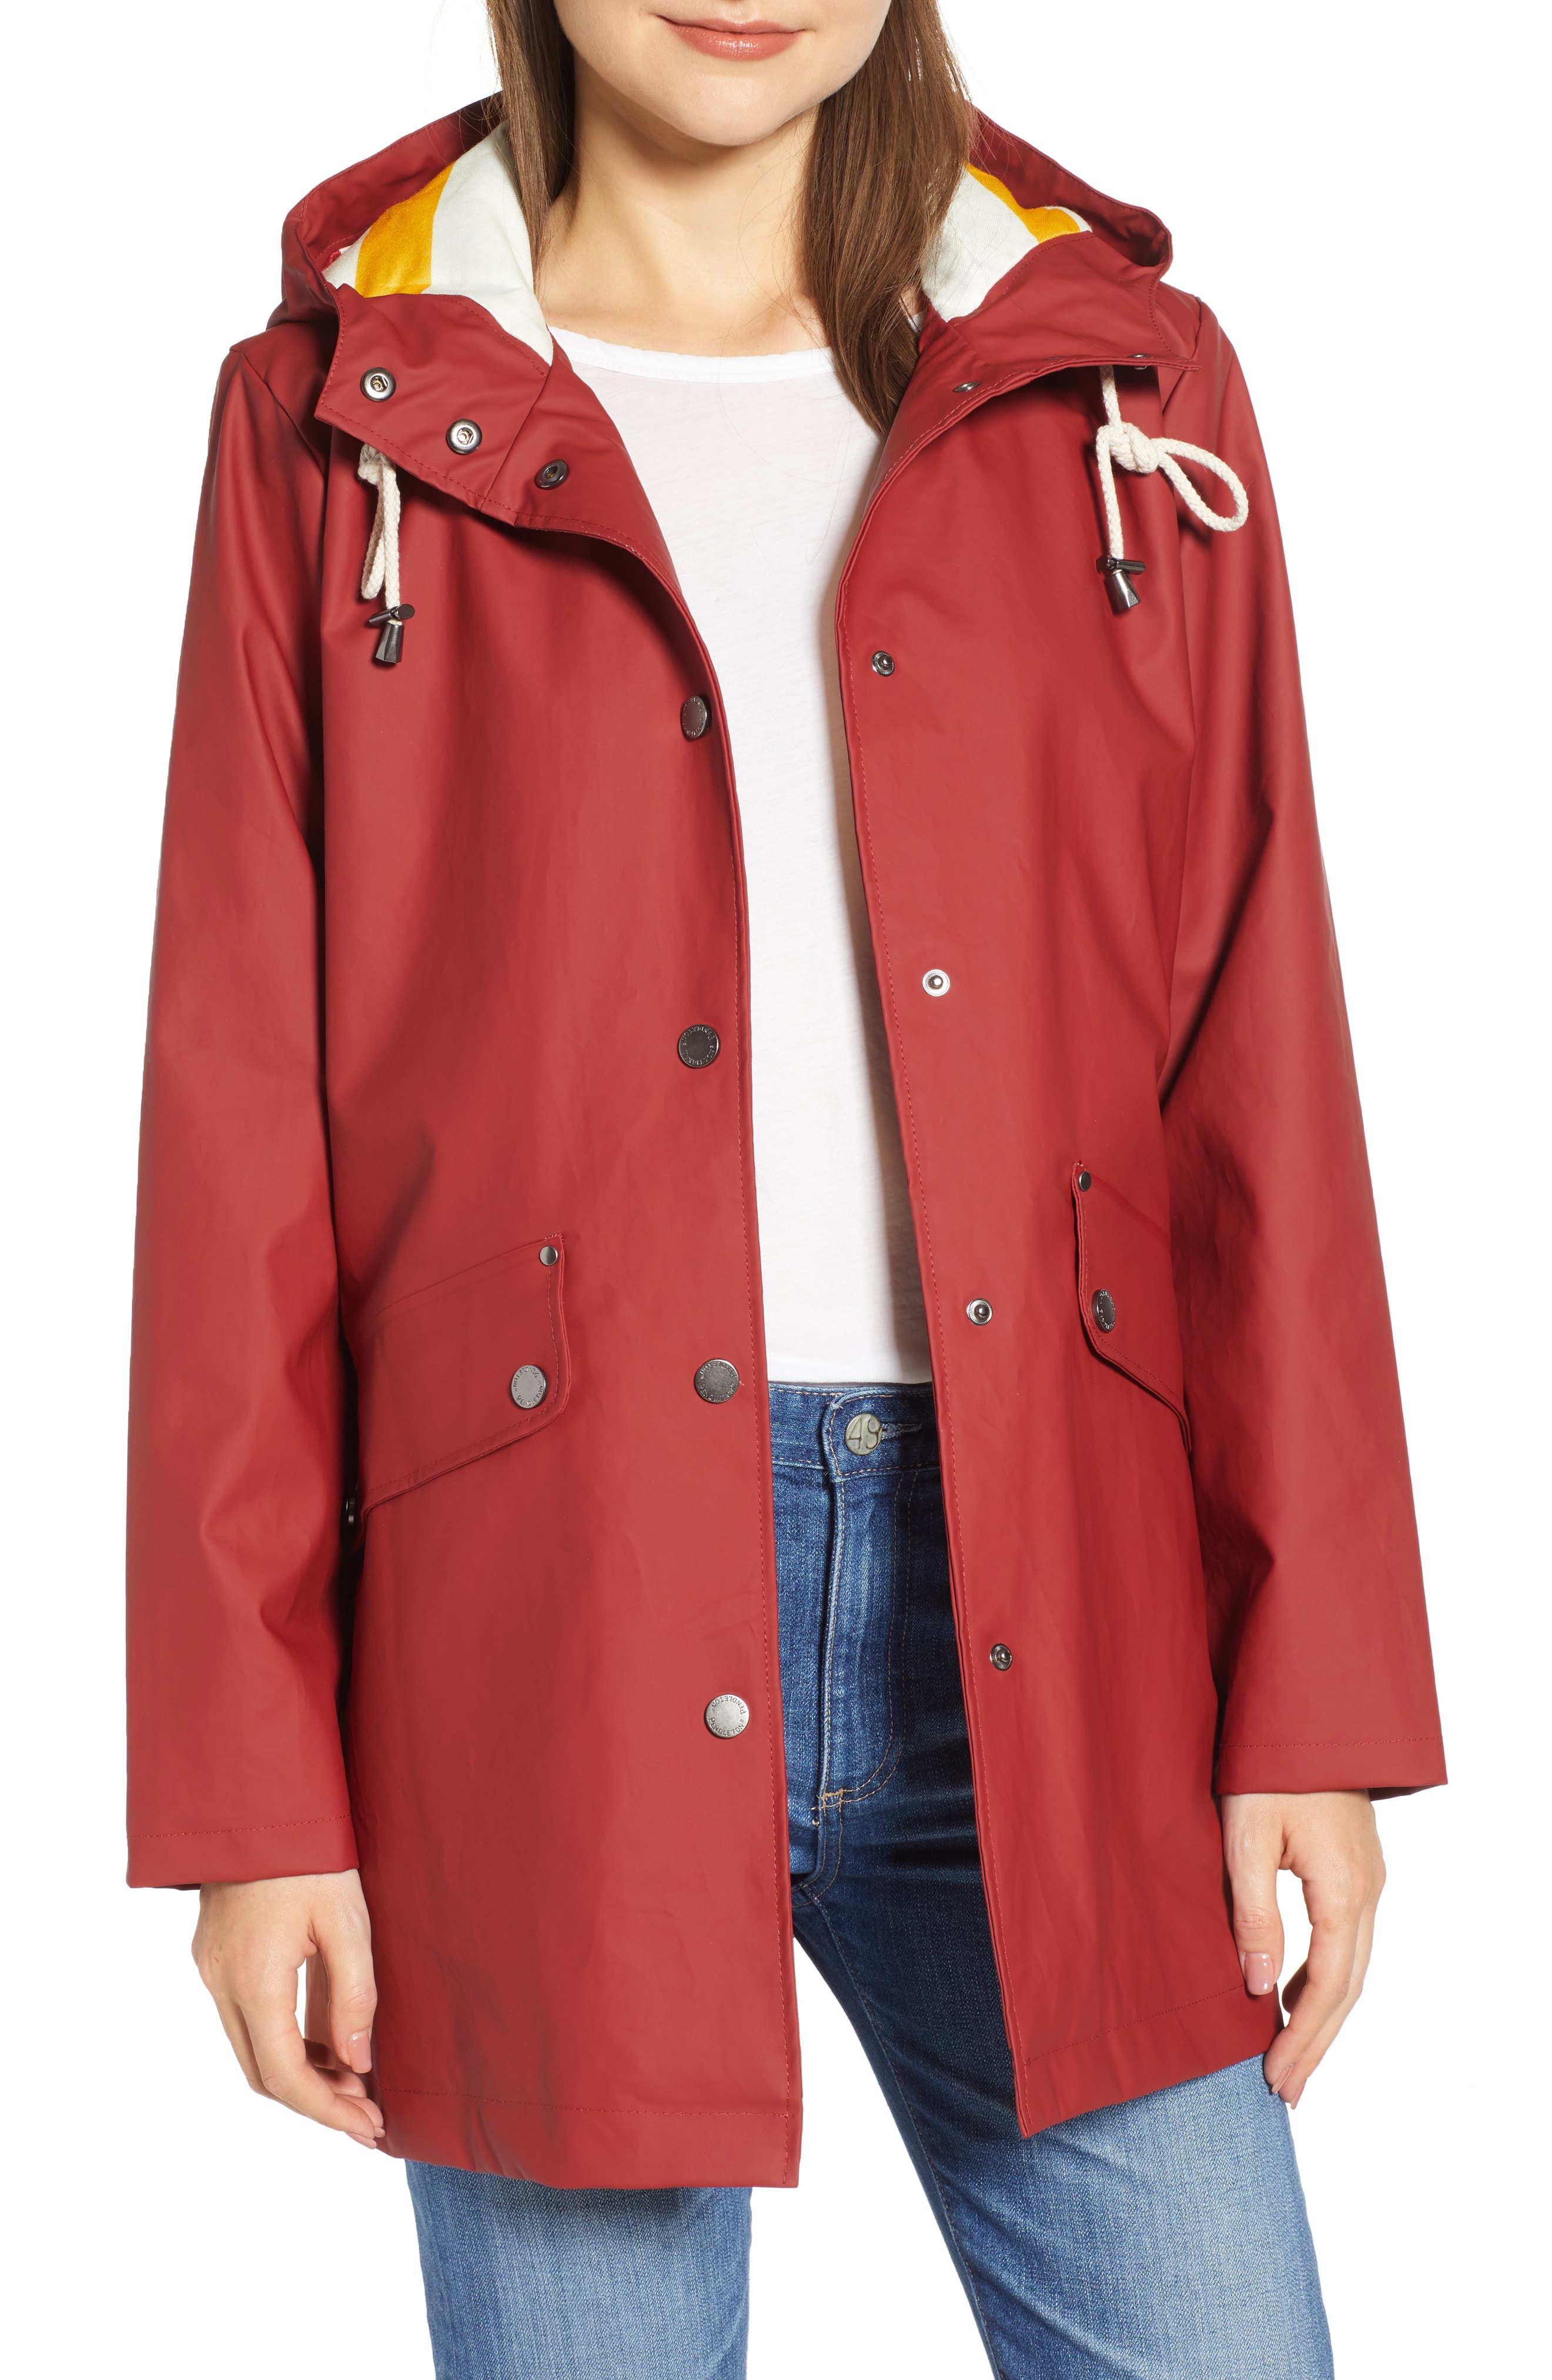 Pendleton Astoria Rain Jacket